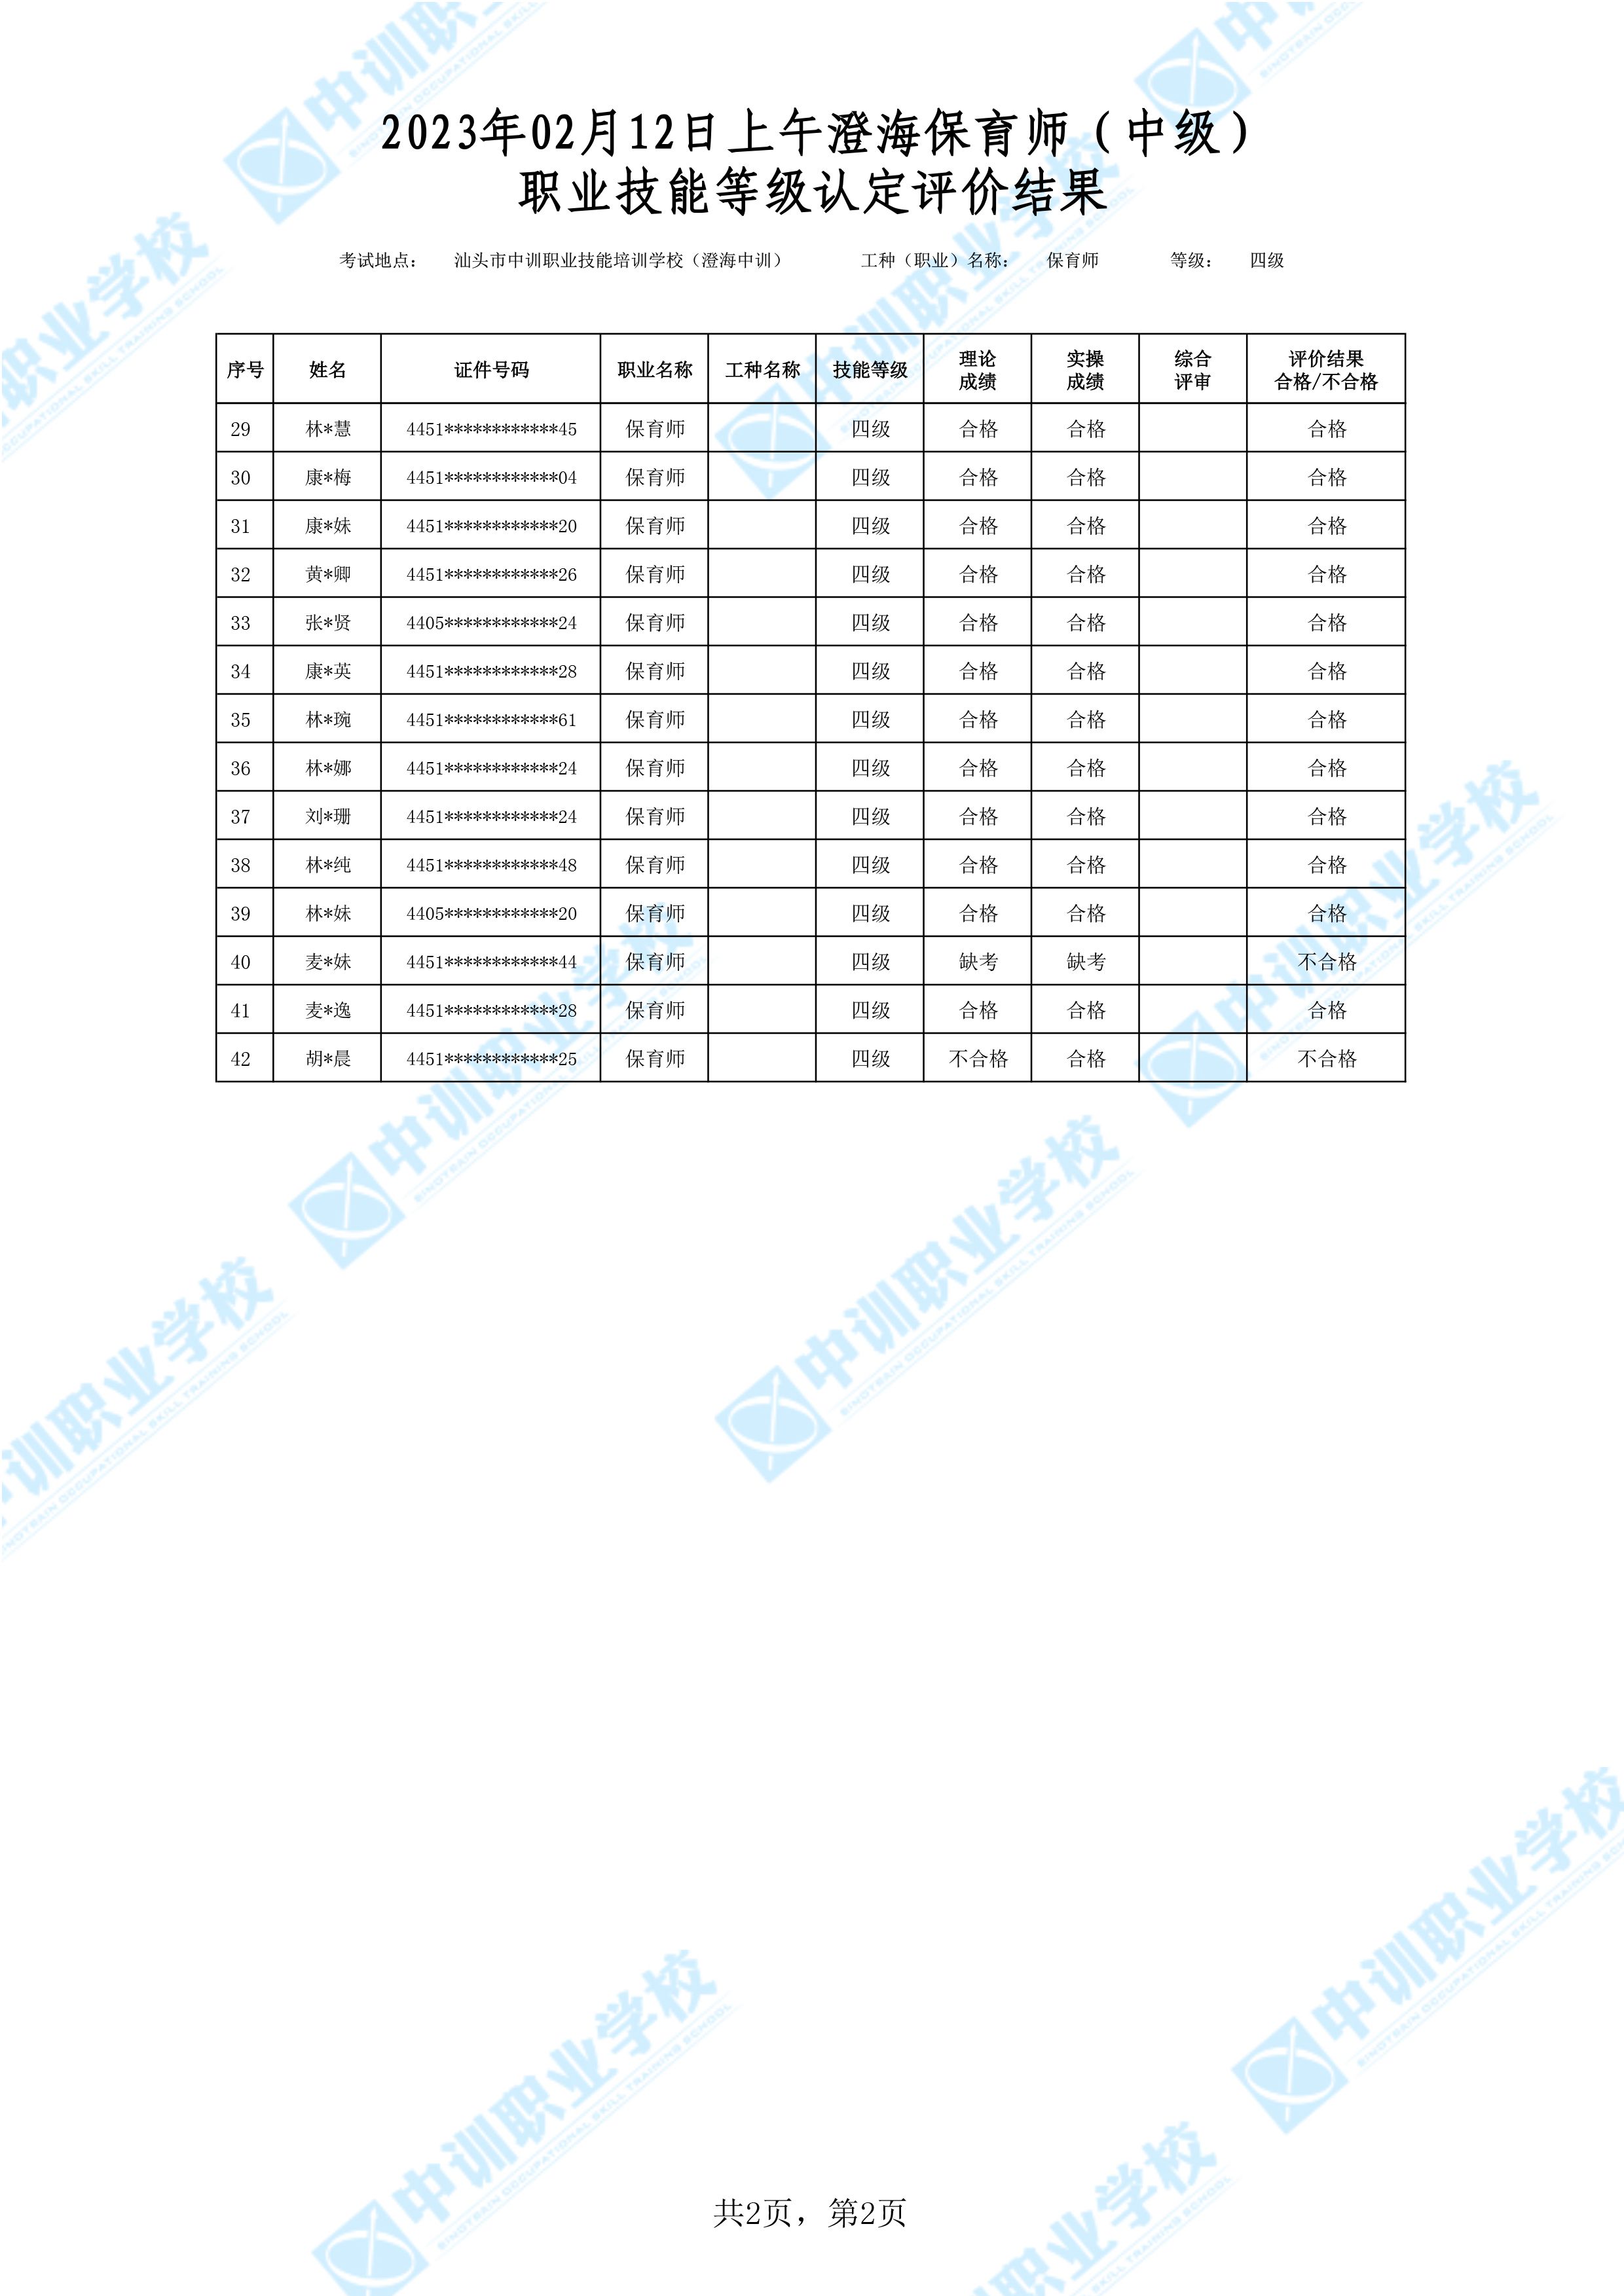 2023-02-12日上午澄海中级保育师考试鉴定名册表-2 副本.jpg